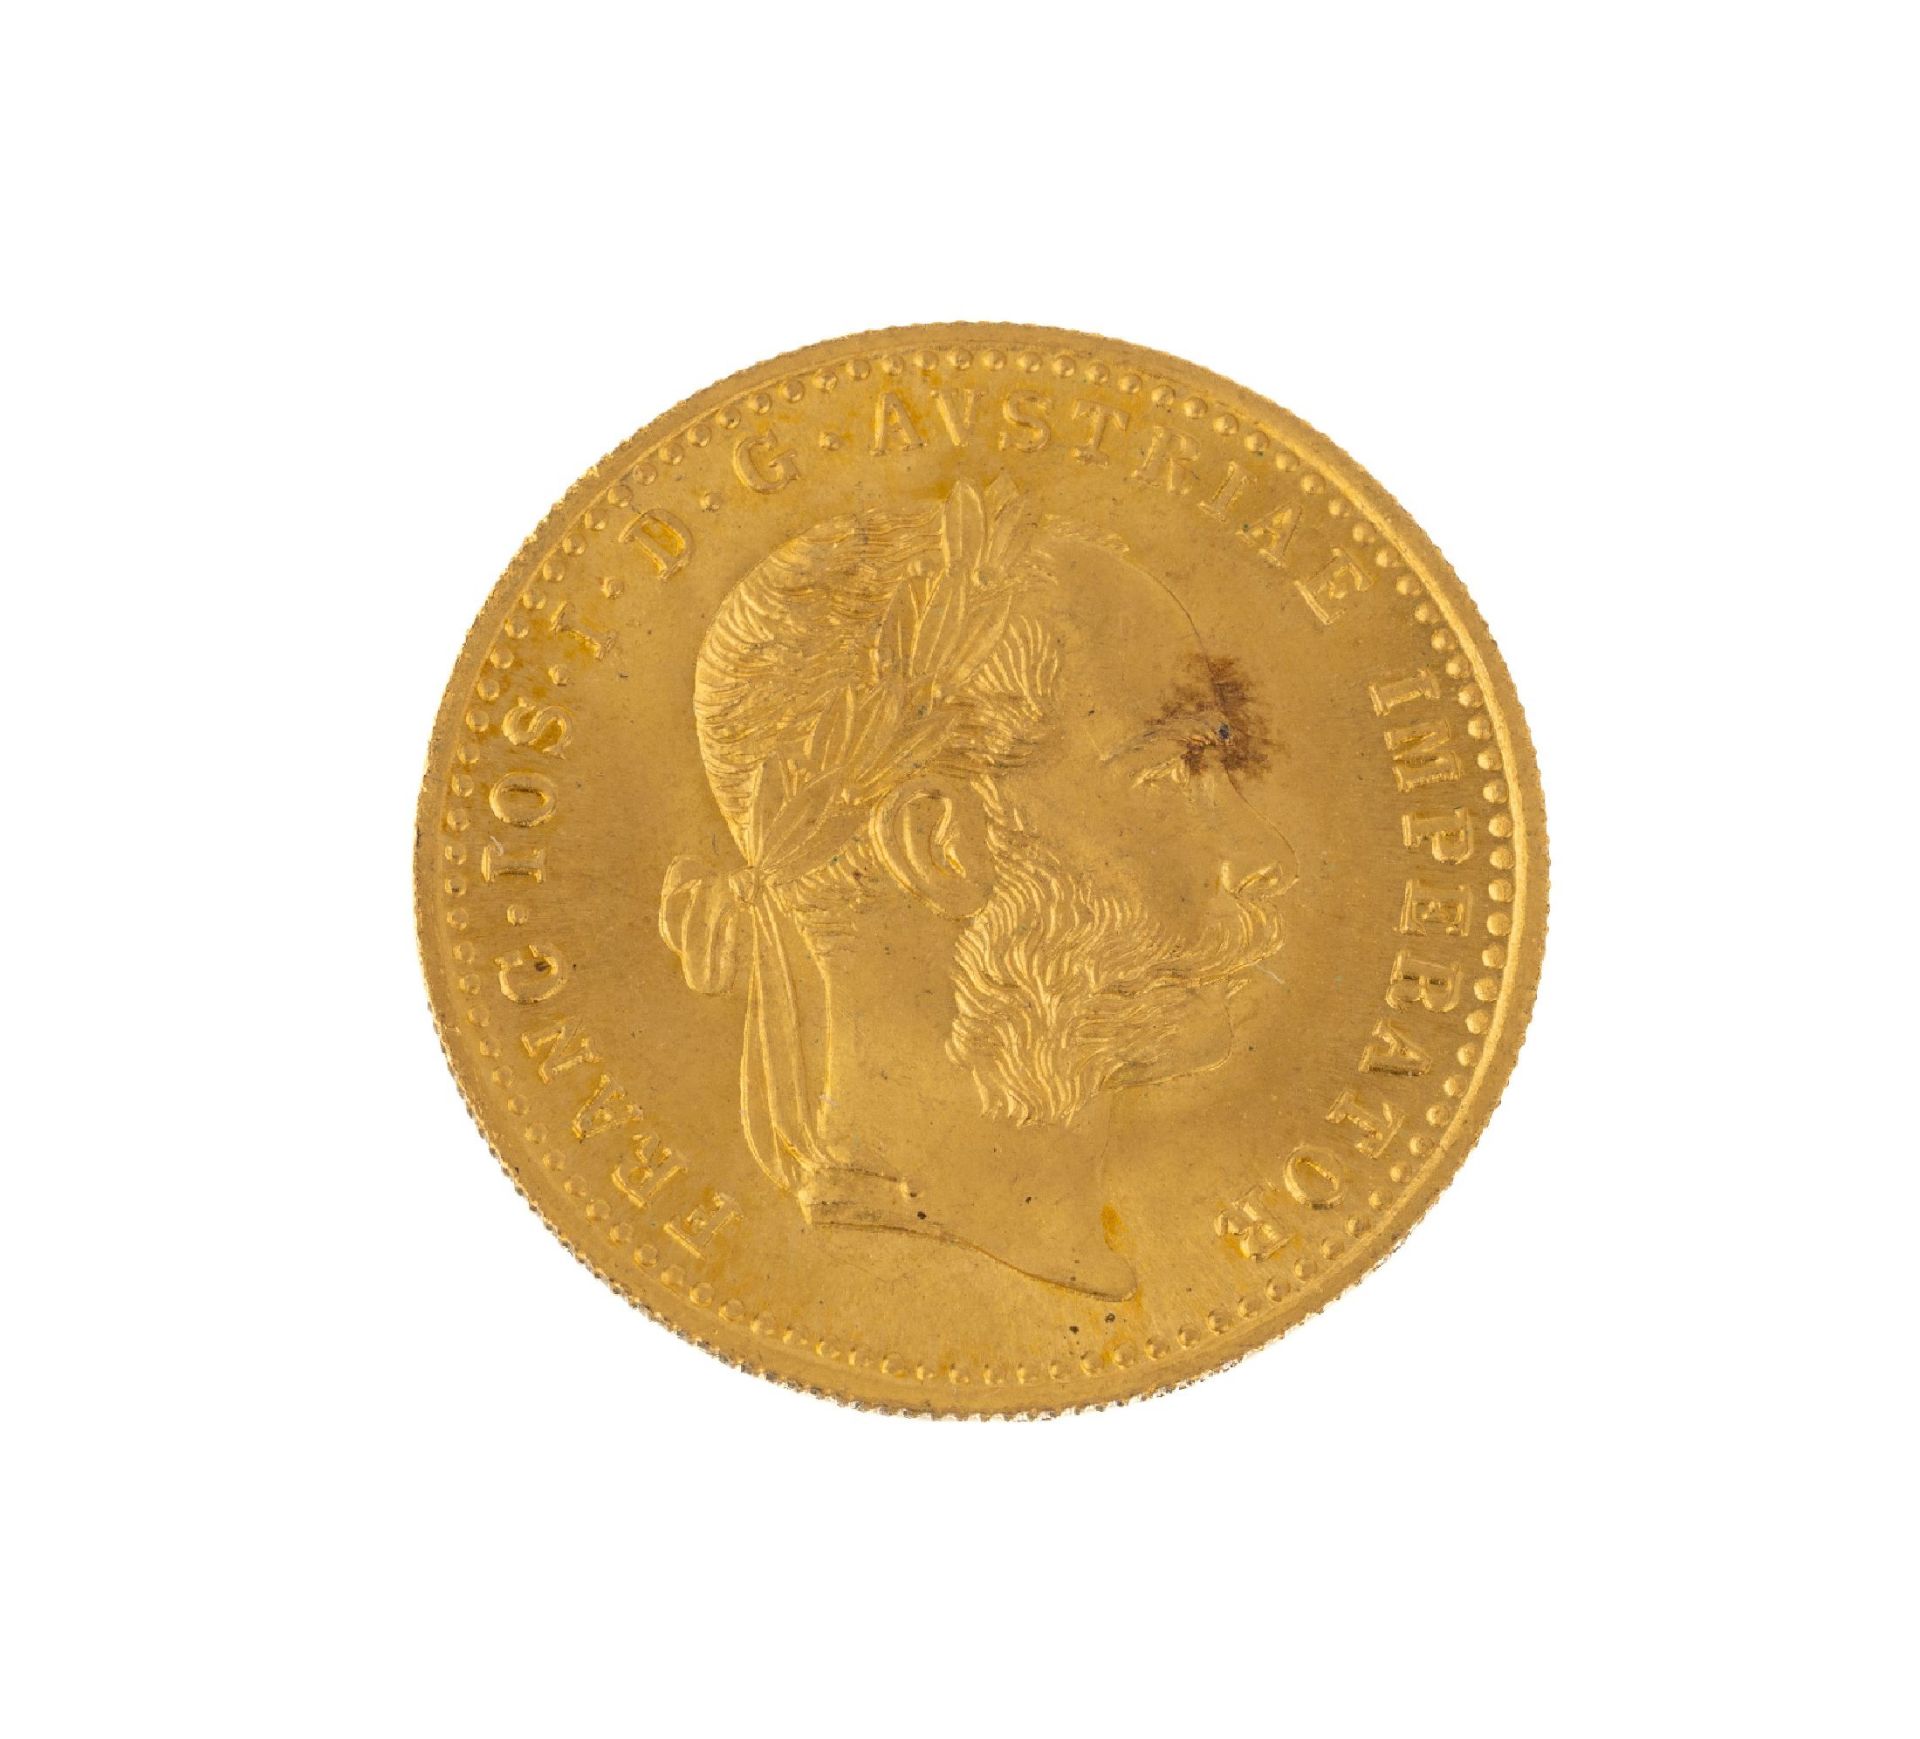 Goldmünze 1 Dukat, Österreich-Ungarn, FranzJoseph I.,